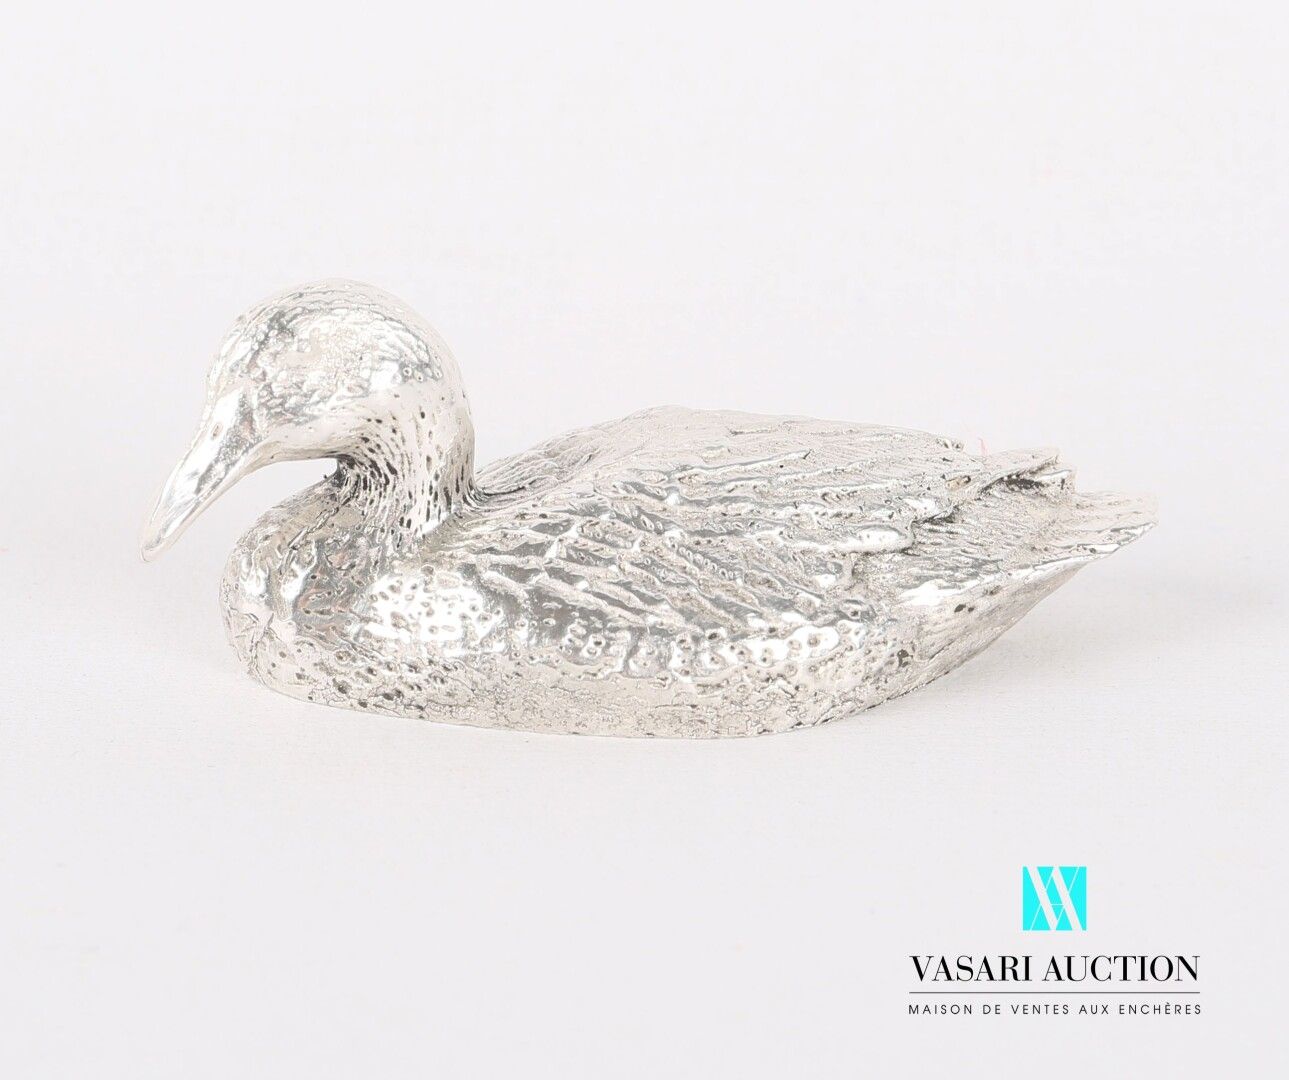 Null 代表一只鸭子的银色主题。

重量：136.80克 - 长度：6.5厘米